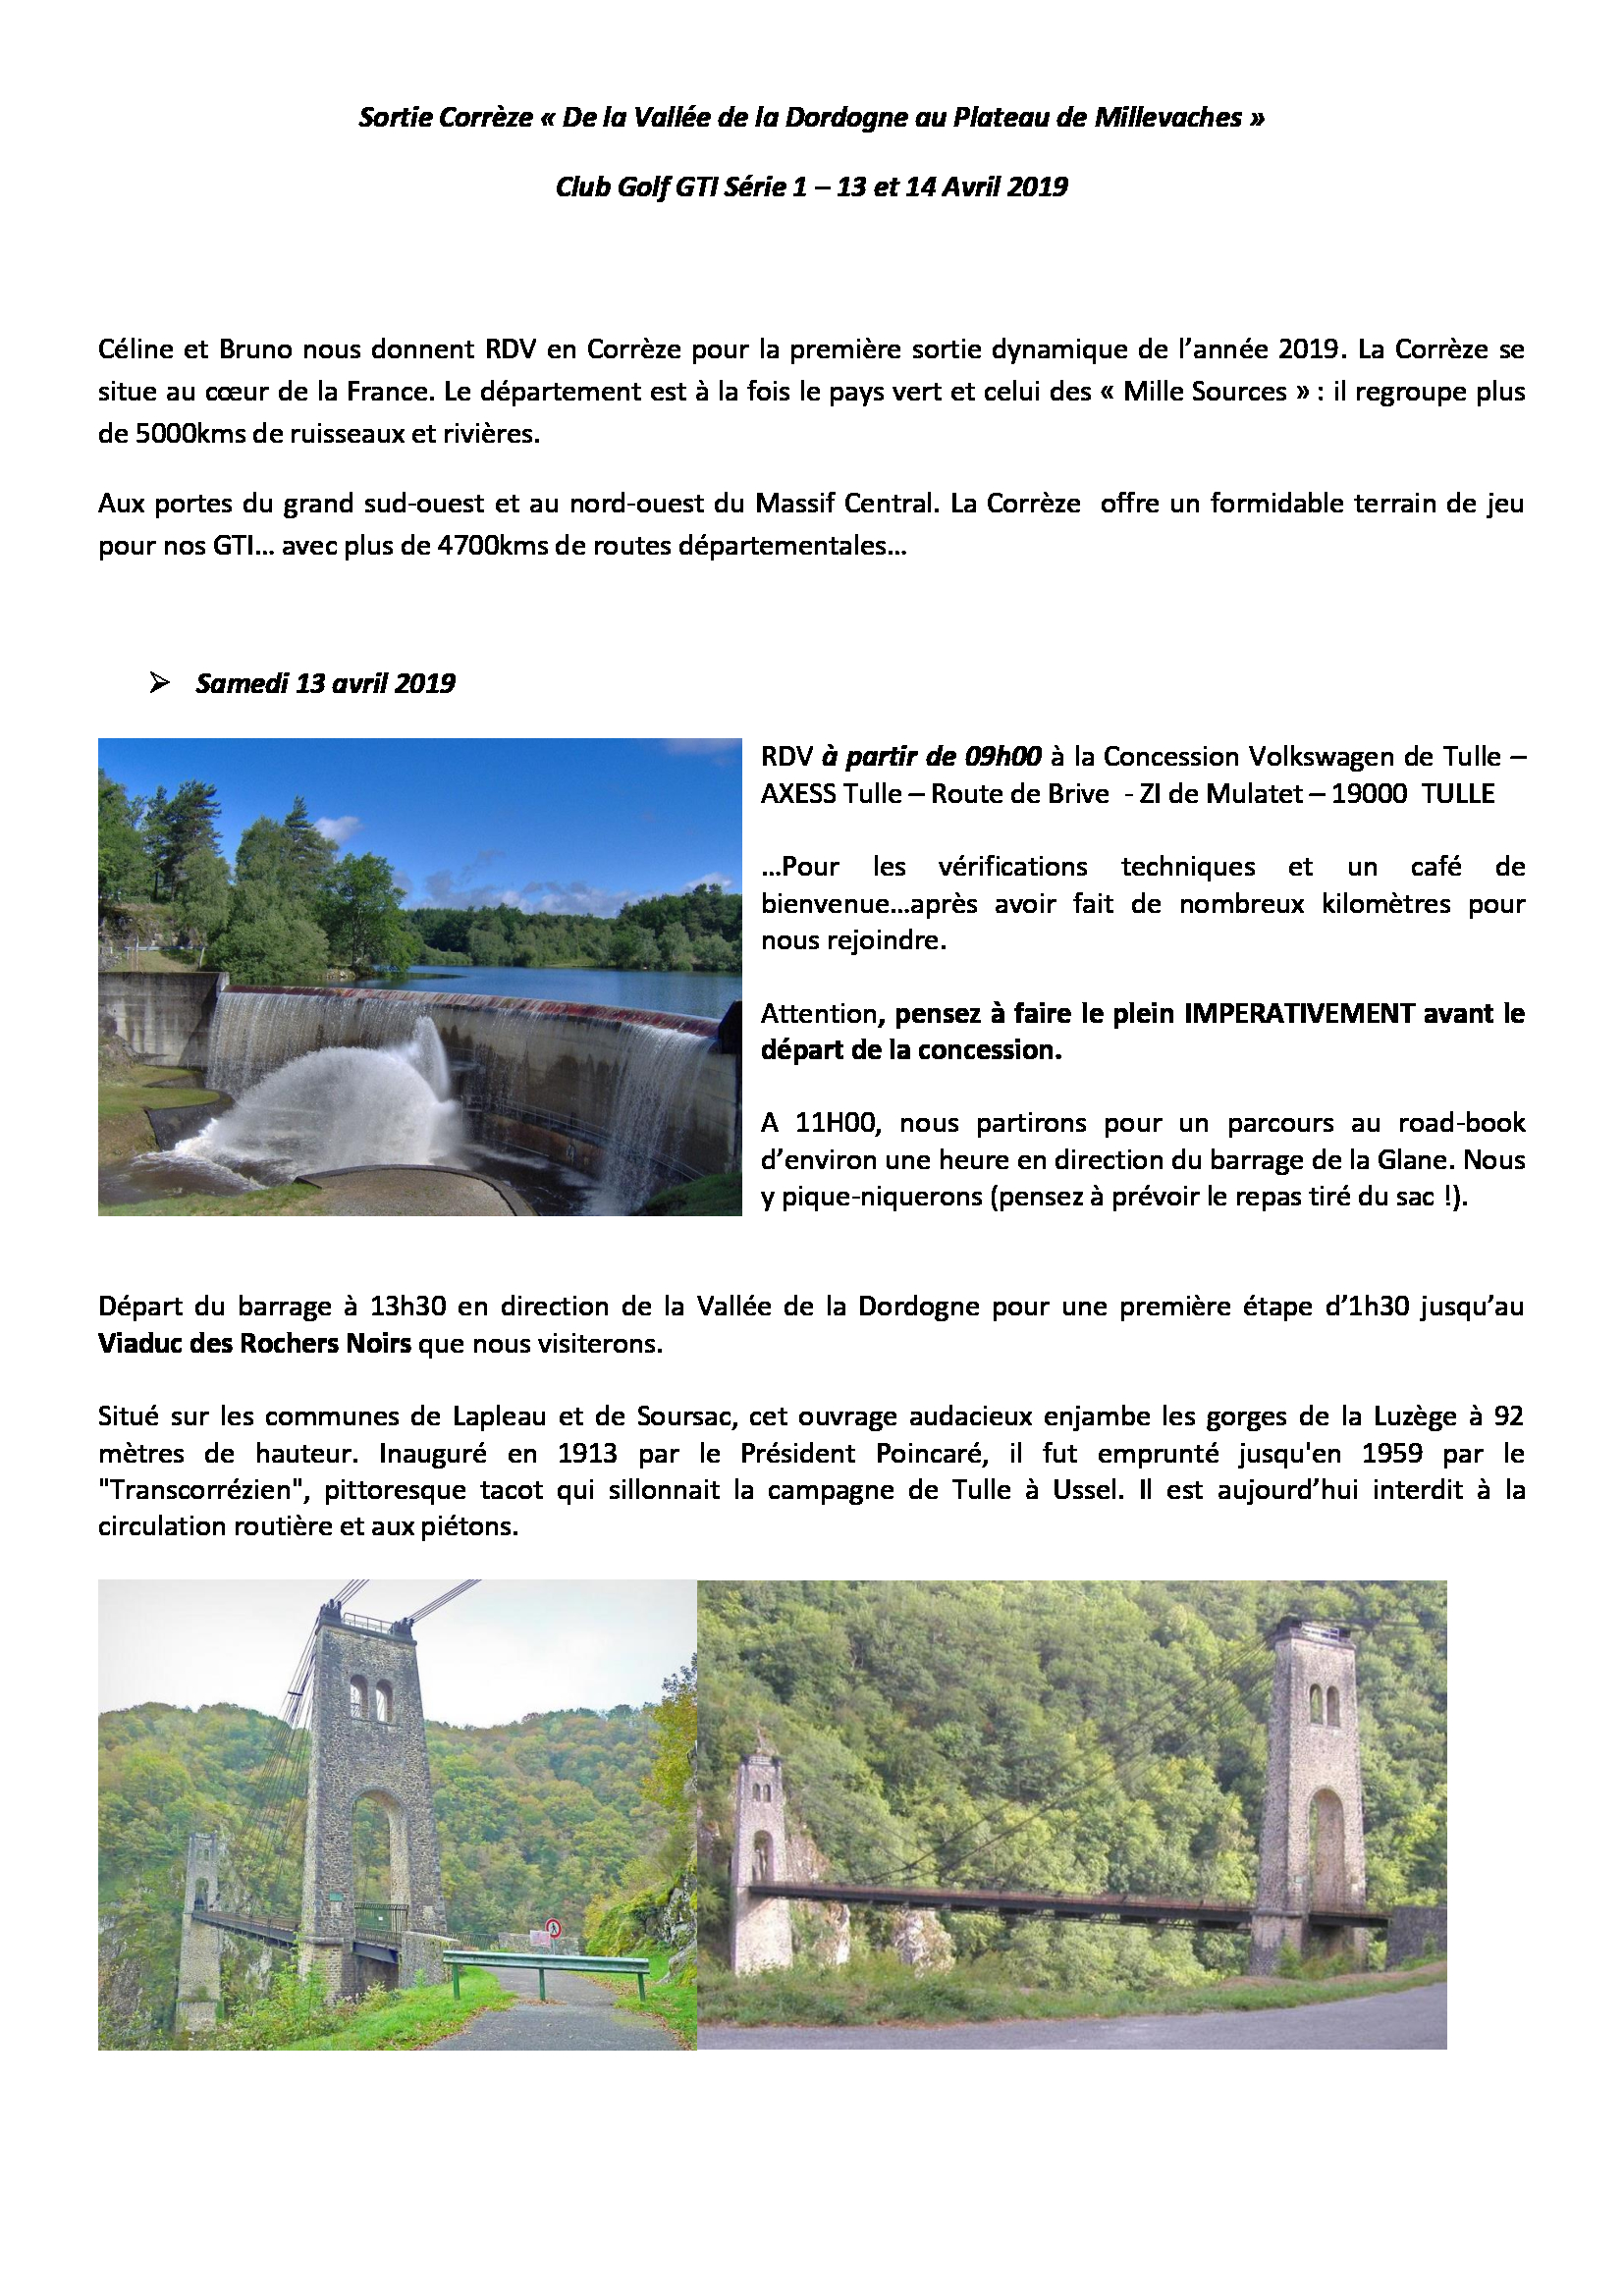 Sortie en Corrèze: les 13 & 14 Avril - Page 2 19030811315821506916150846